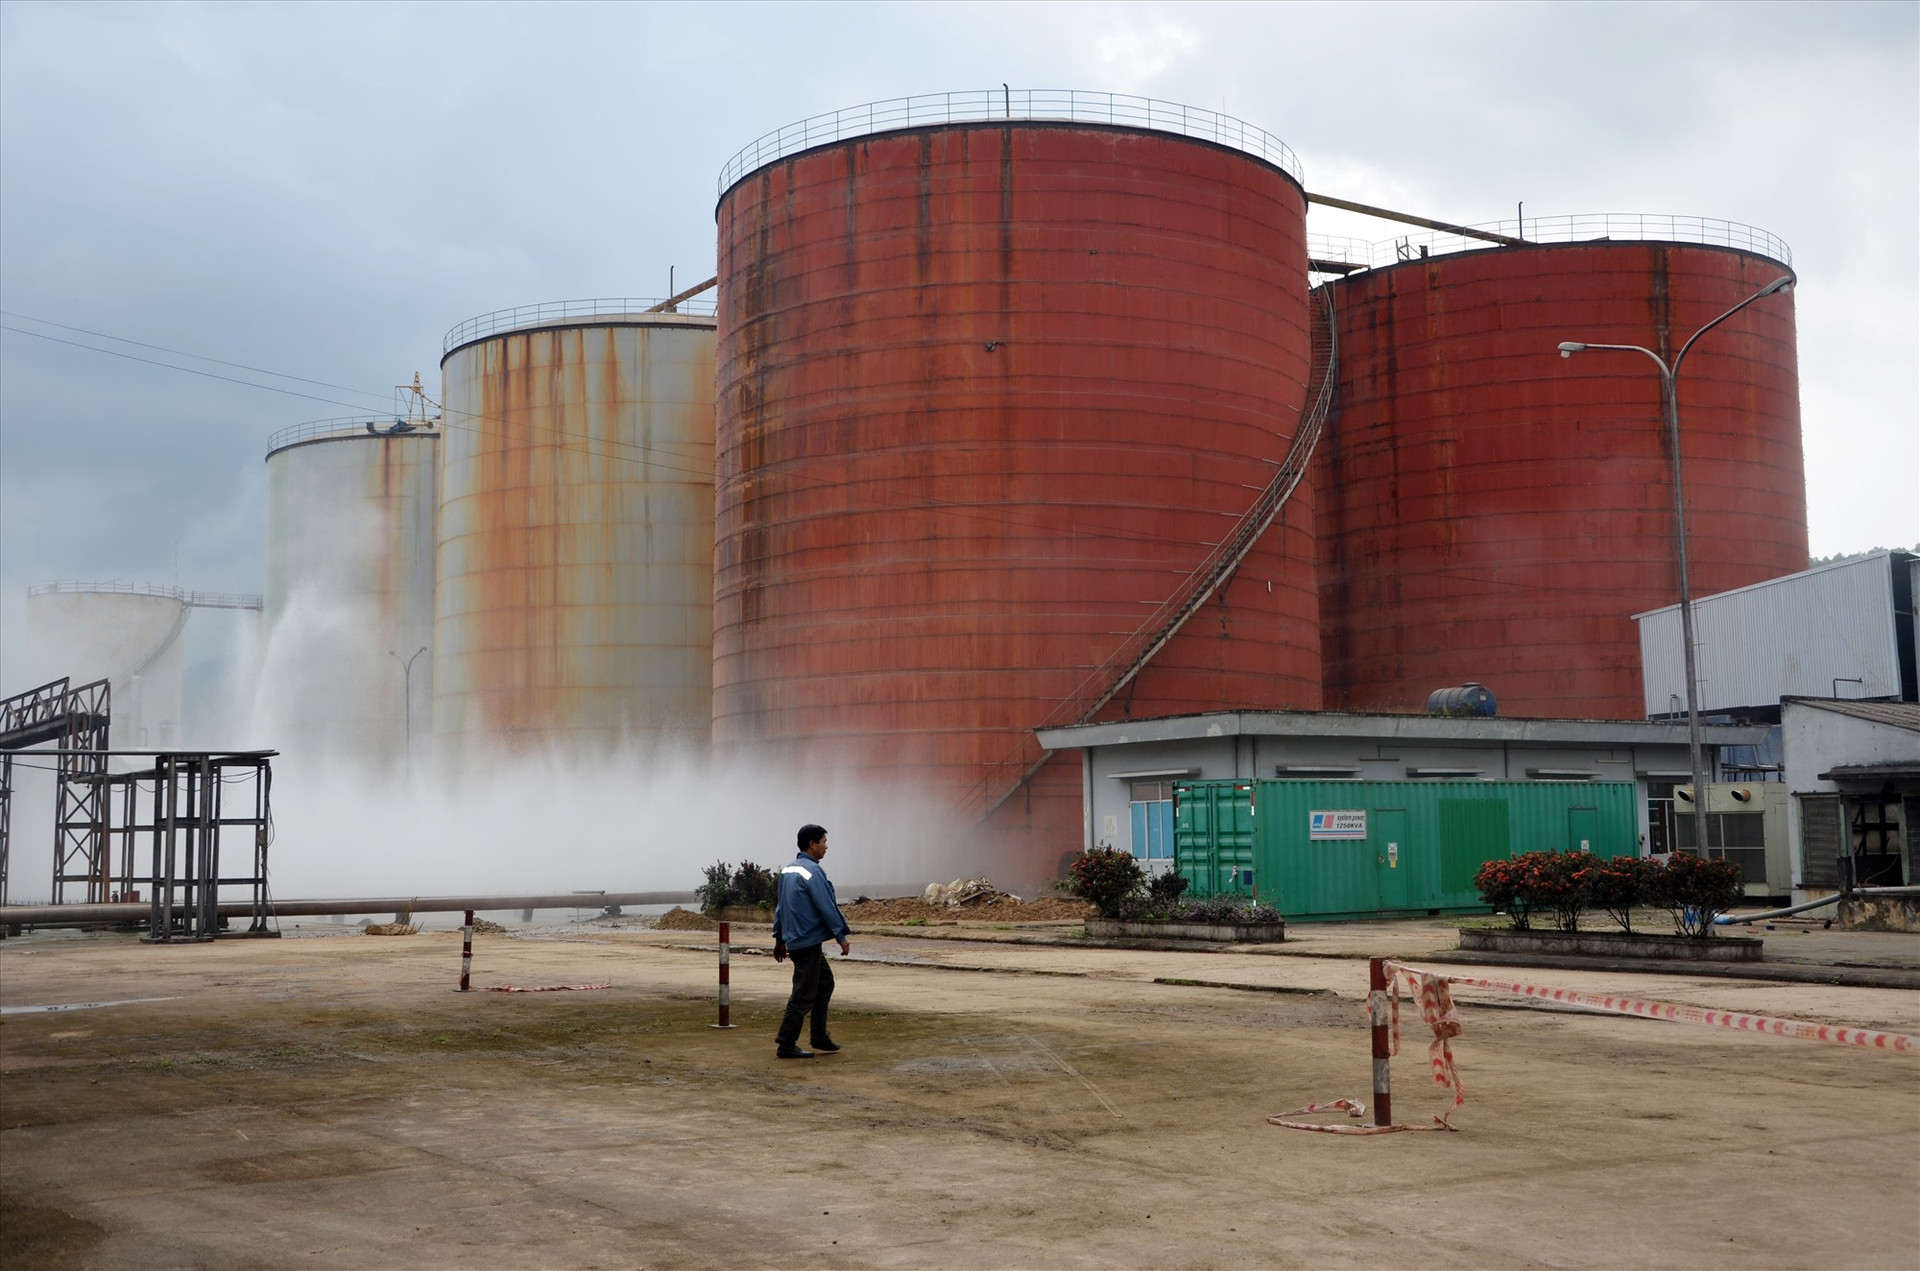 Nhà máy sản xuất cồn Đại Tân của Công ty CP Nhiên liệu sinh học Tùng Lâm phải tạm dừng hoạt động do người dân phản đối việc gây ô nhiễm.Ảnh: H.P